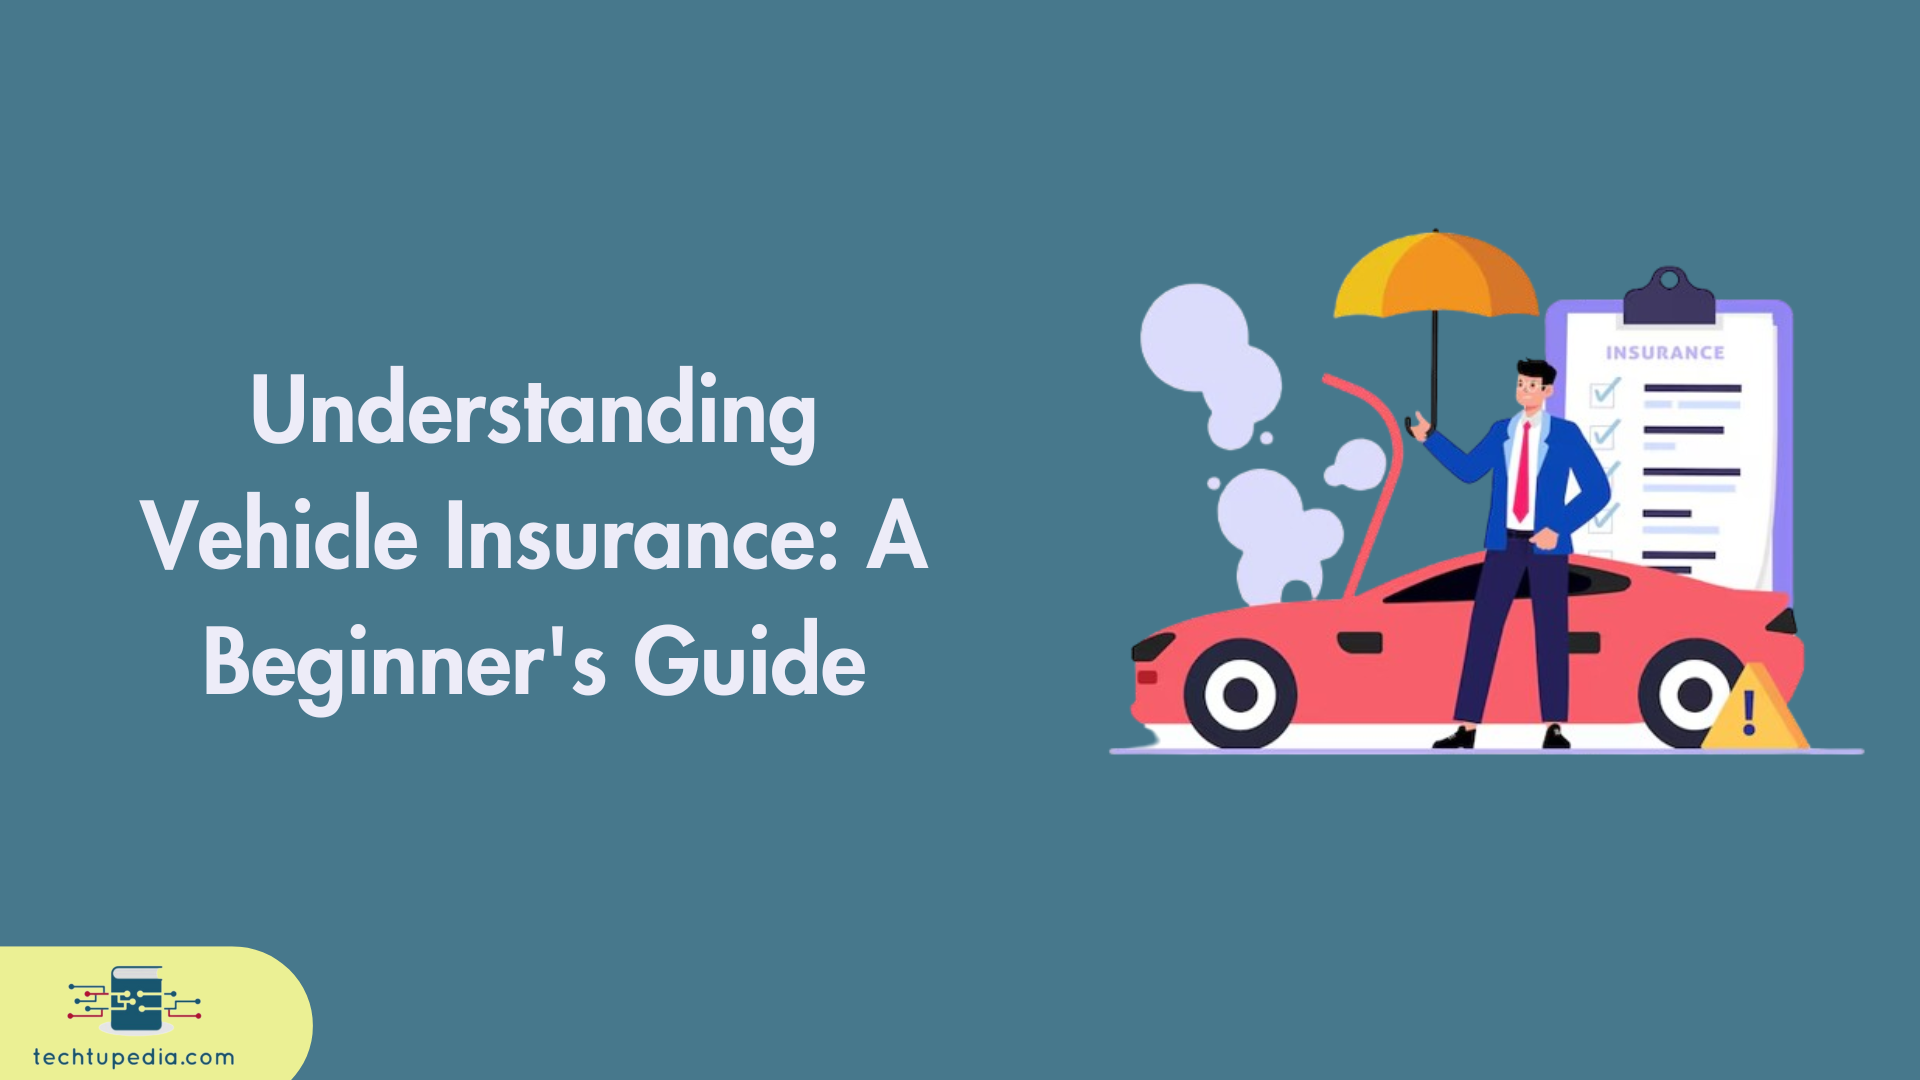 Understanding Vehicle Insurance: A Beginner's Guide